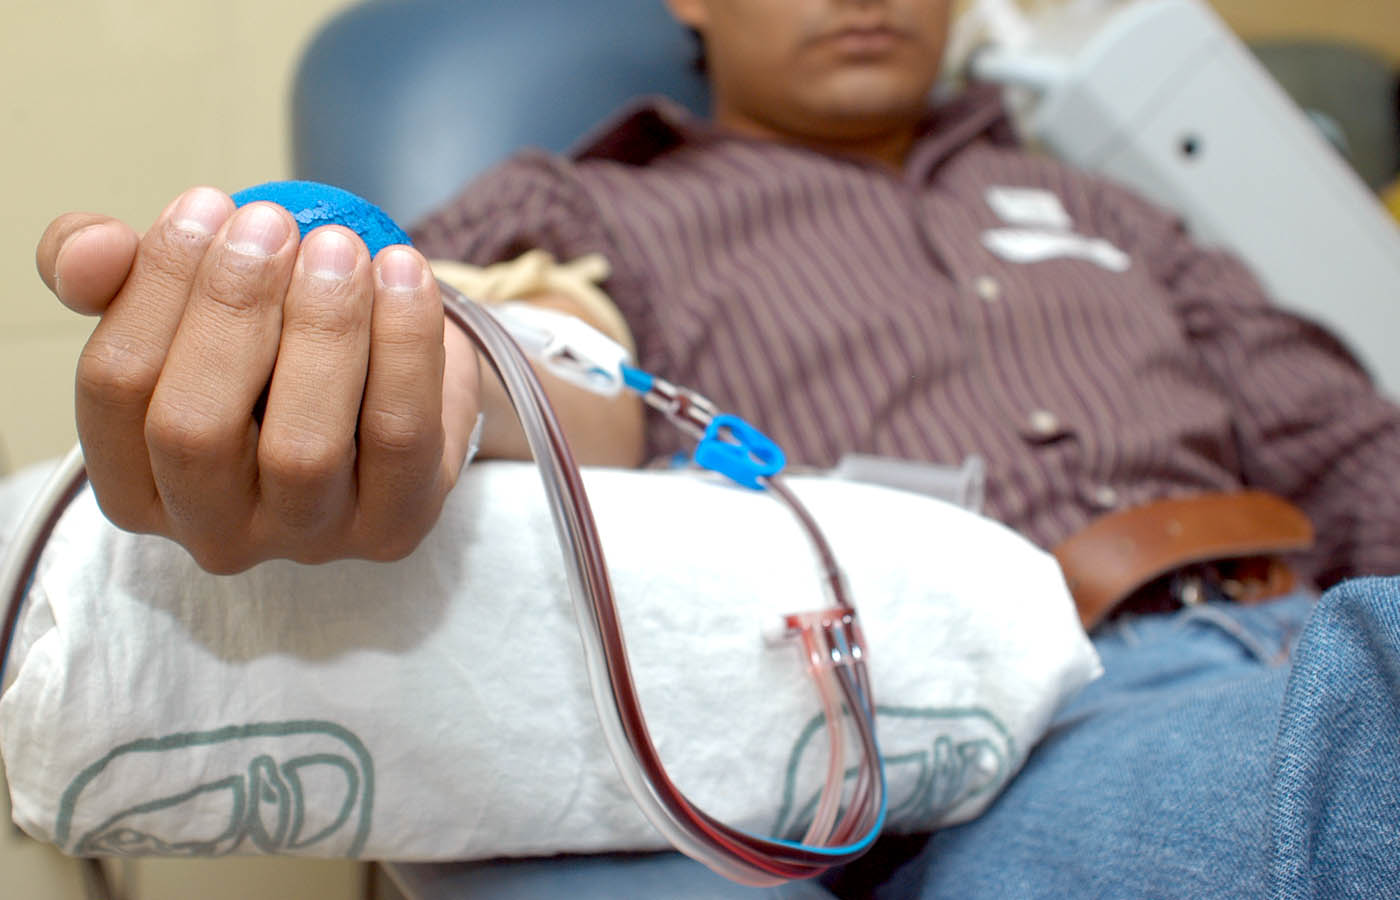 Banco de Sangre requiere 120 donadores por día para atender demanda de Semana Santa